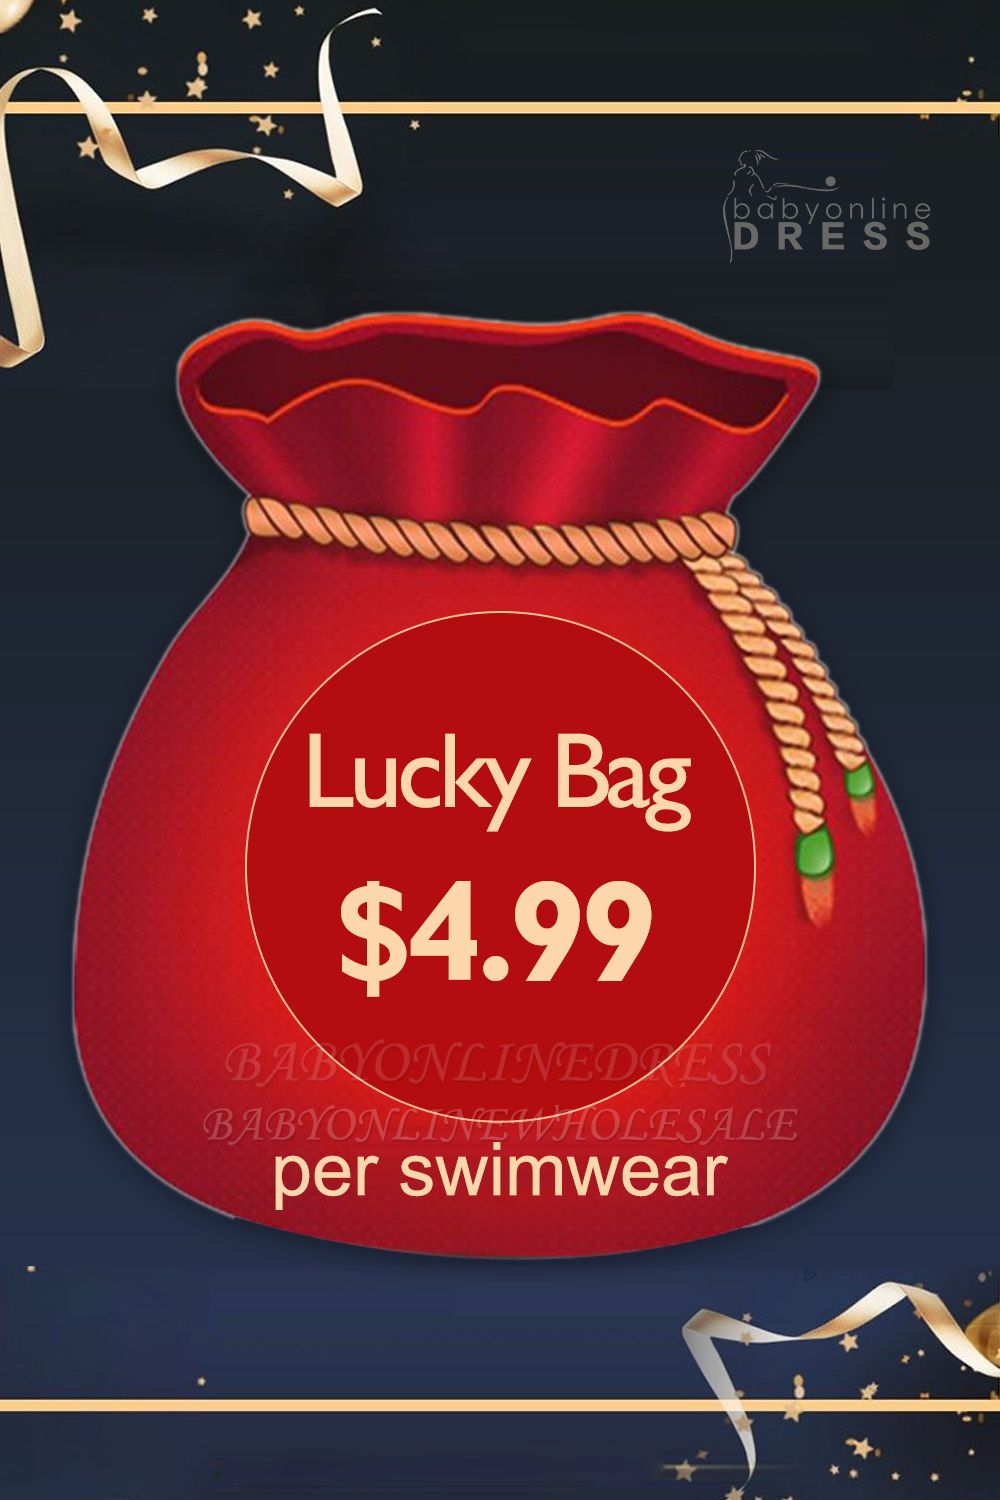 $ 4.99 um Lucky Bag mit Random Hot Sale Swimwear zu bekommen